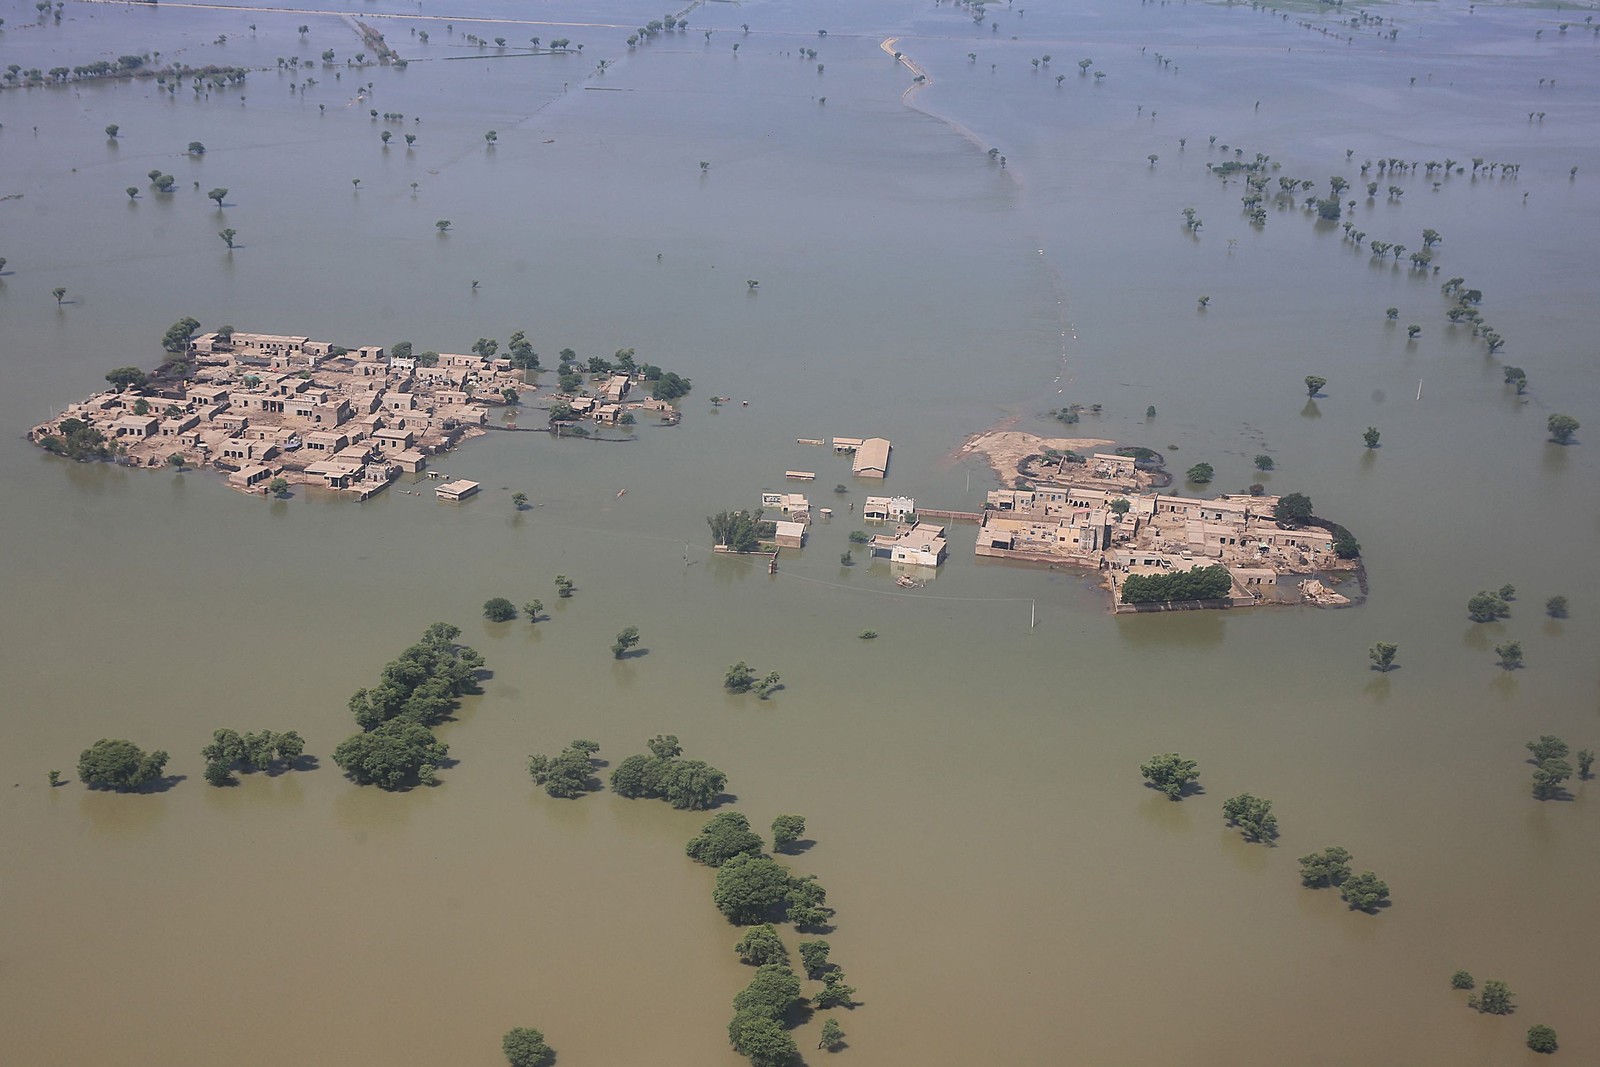 Área residencial inundada após fortes chuvas de monção no distrito de Dadu, na província de Sindh, Paquistão  — Foto: HUSNAIN ALI / AFP